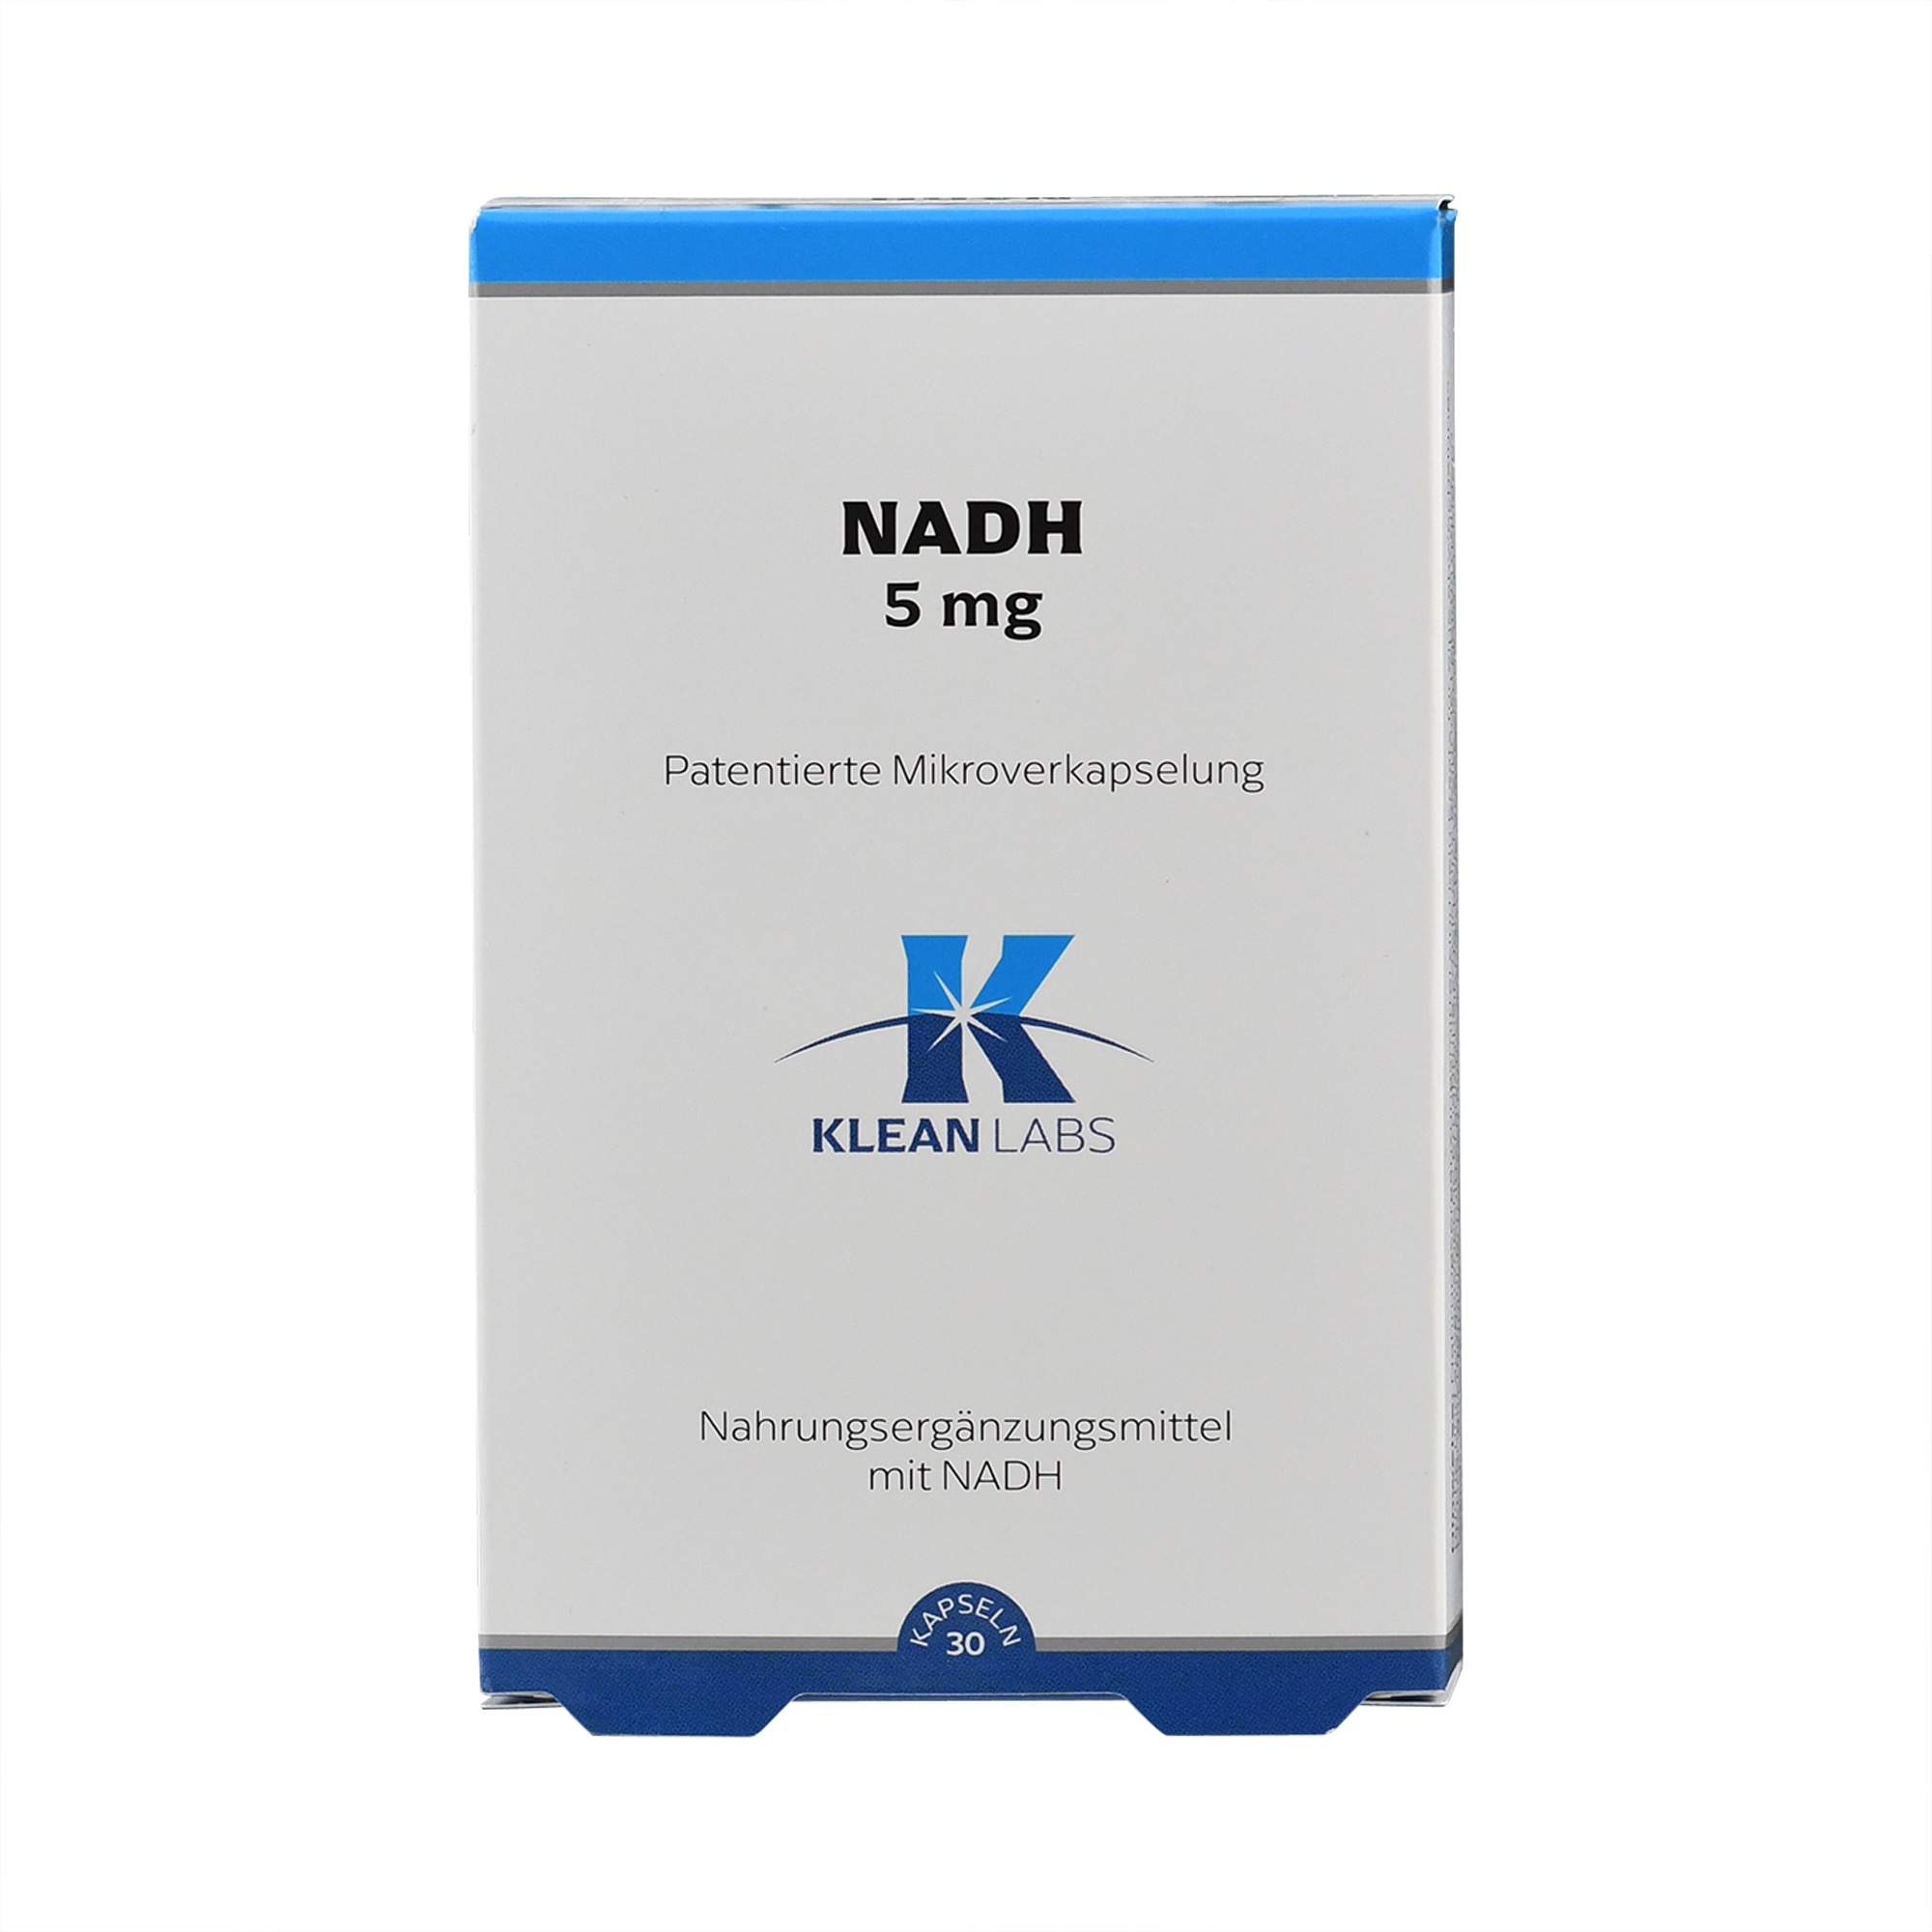 NADH 5 mg stabilisiert von Klean Labs.